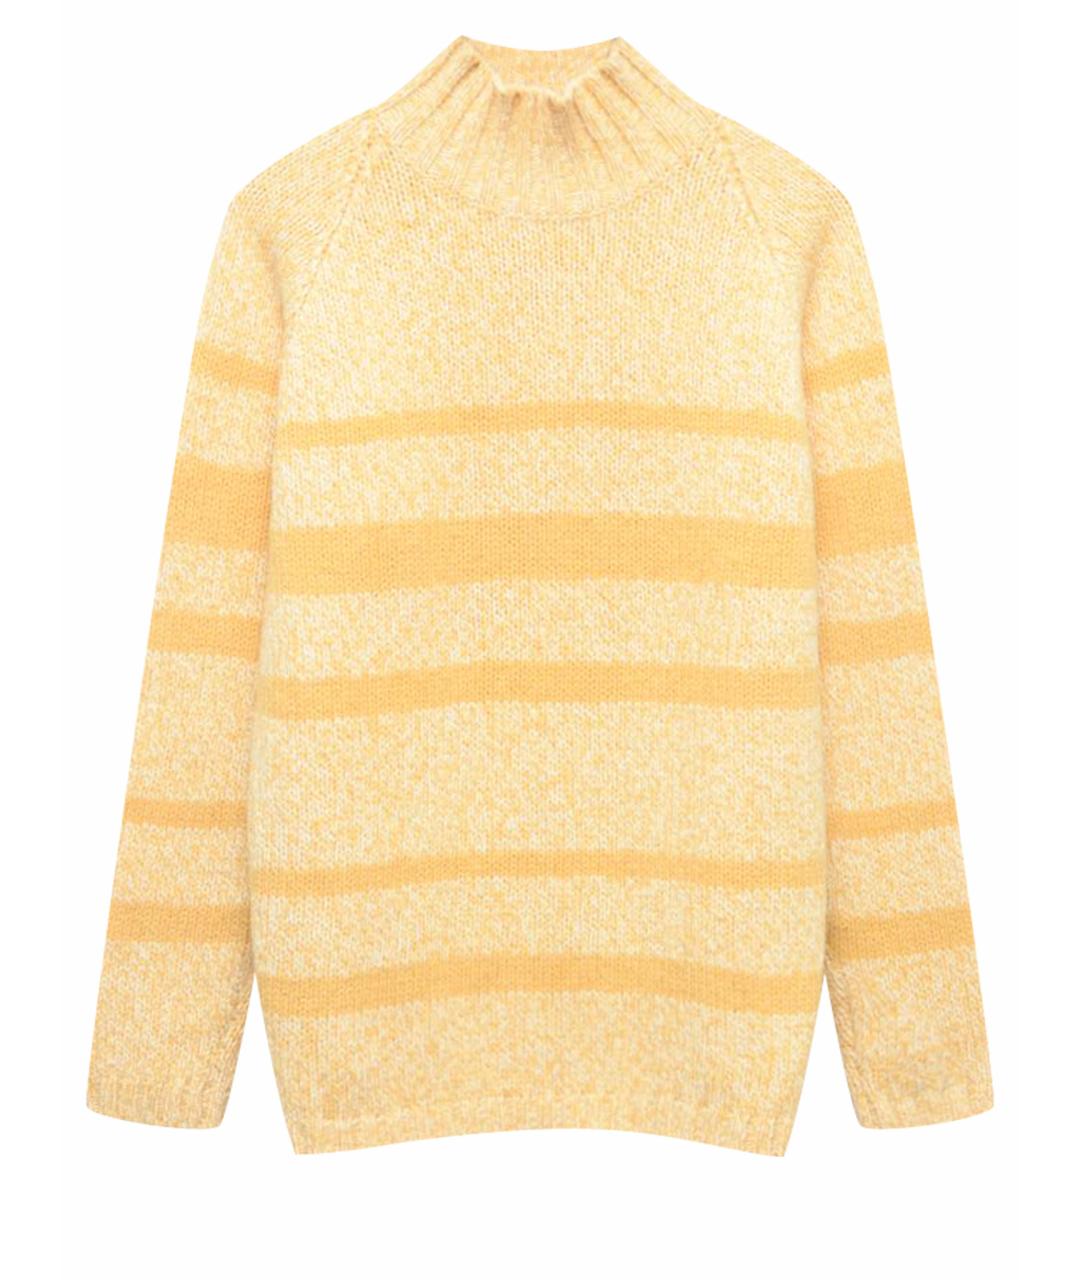 GRAN SASSO Желтый шерстяной джемпер / свитер, фото 1